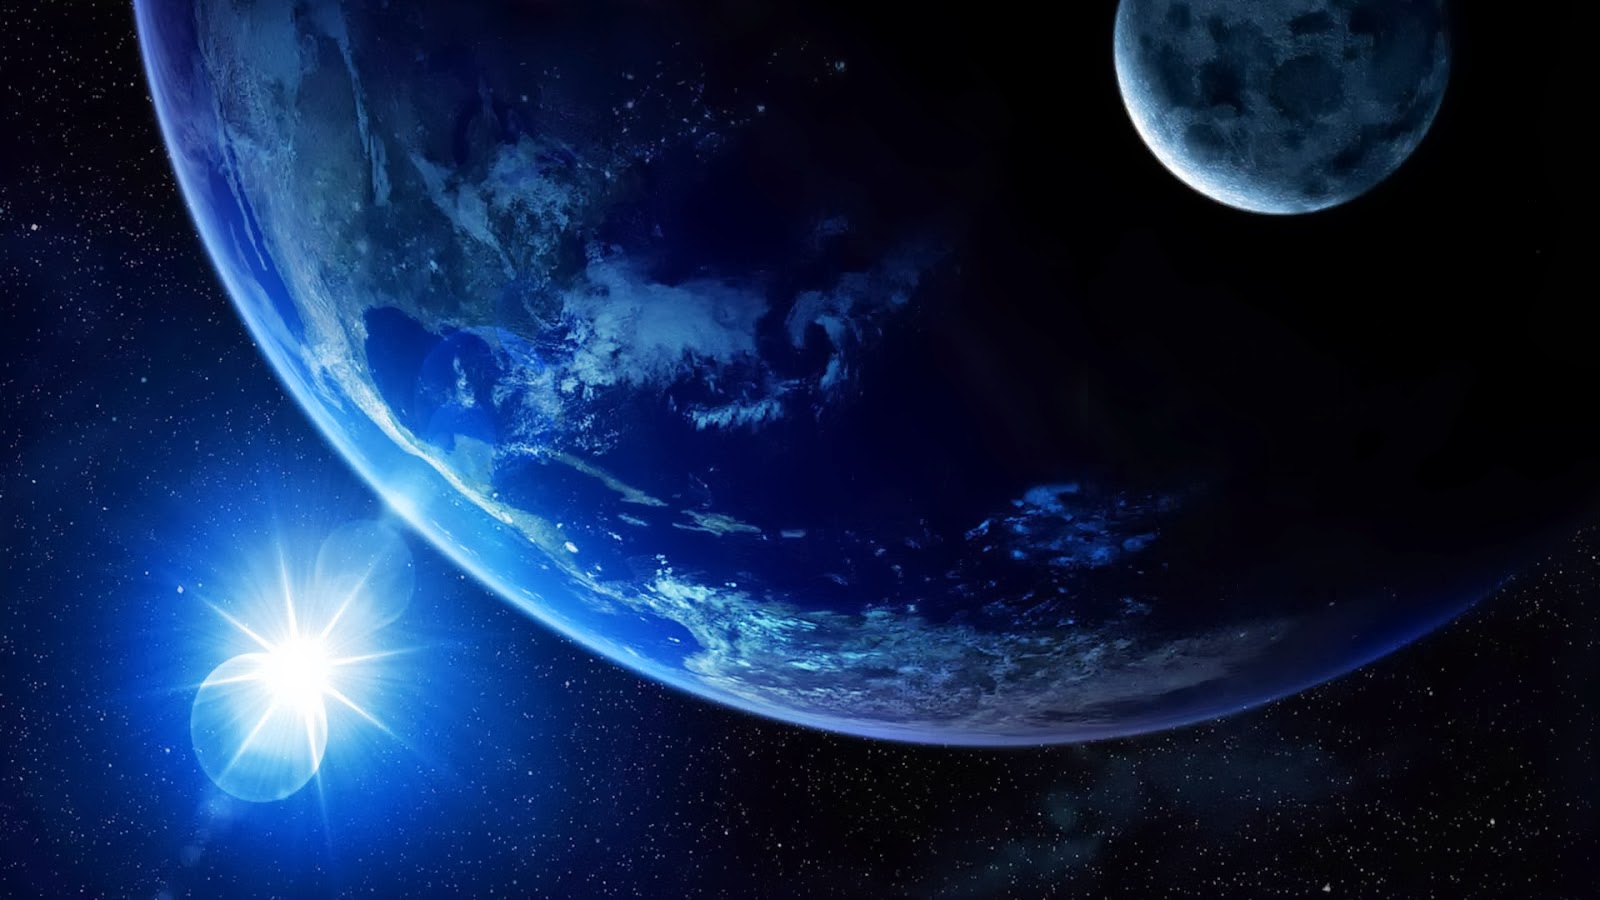 1080p hintergrundbild,weltraum,planet,atmosphäre,astronomisches objekt,blau